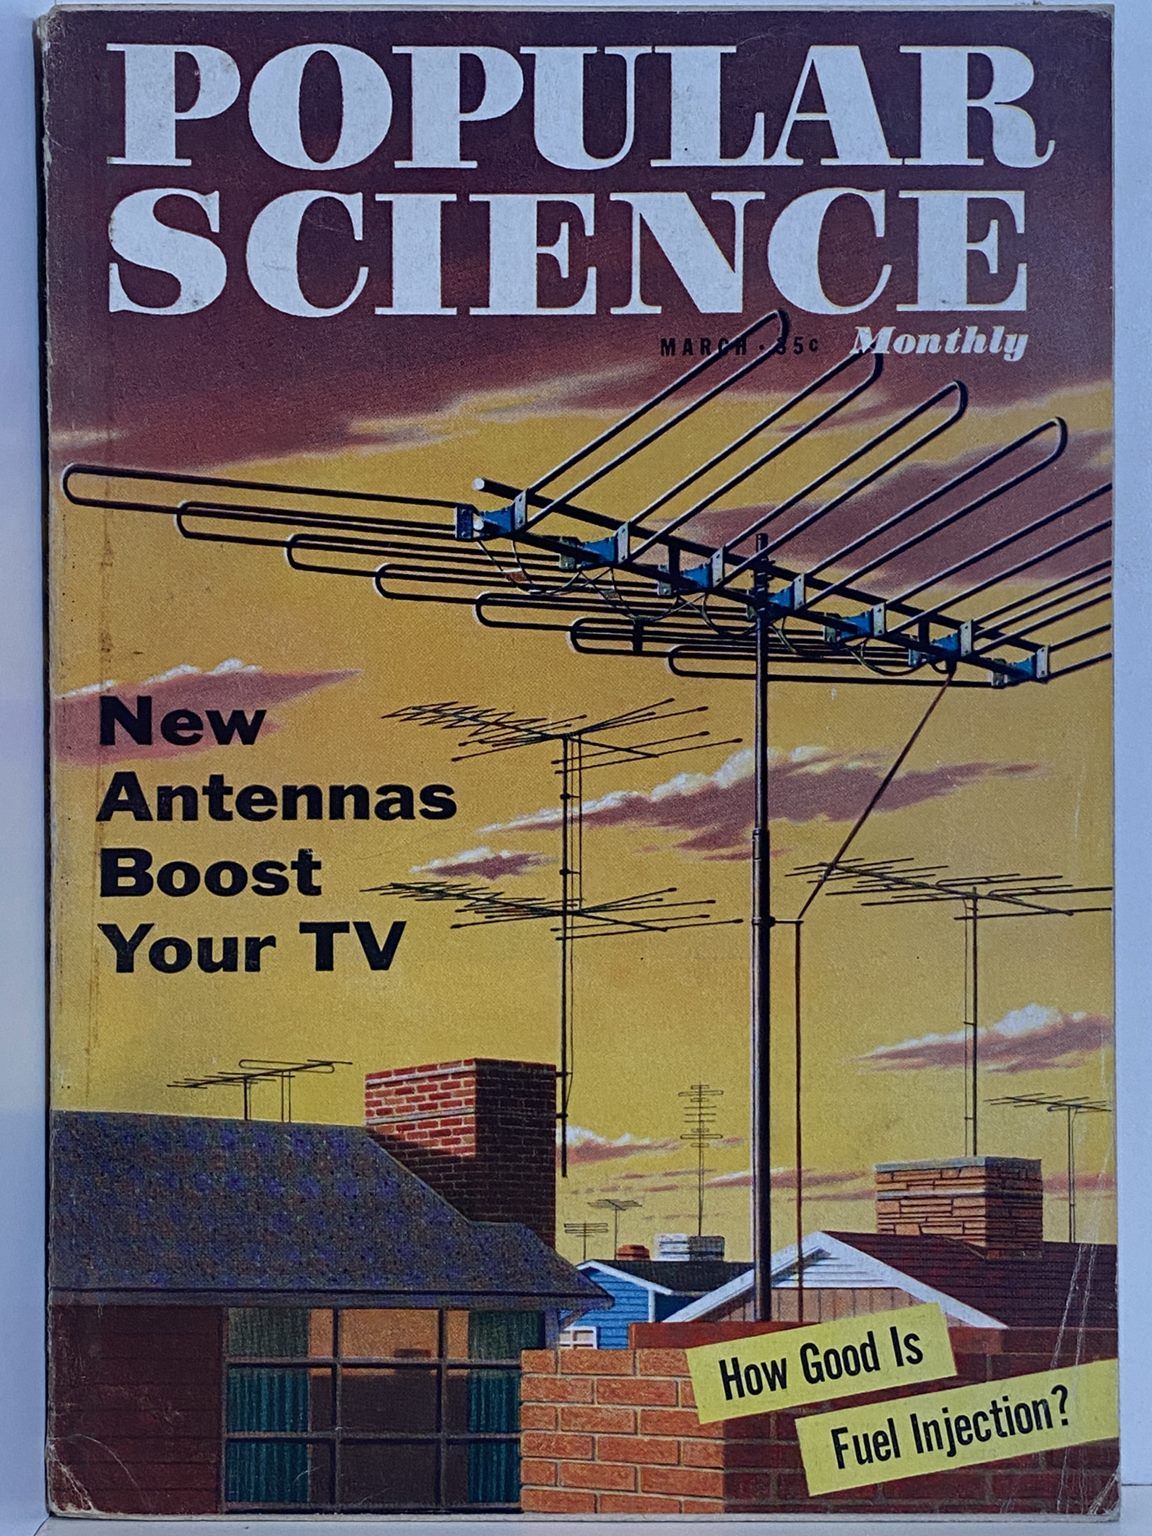 VINTAGE MAGAZINE: Popular Science, Vol. 170, No. 3 - March 1957